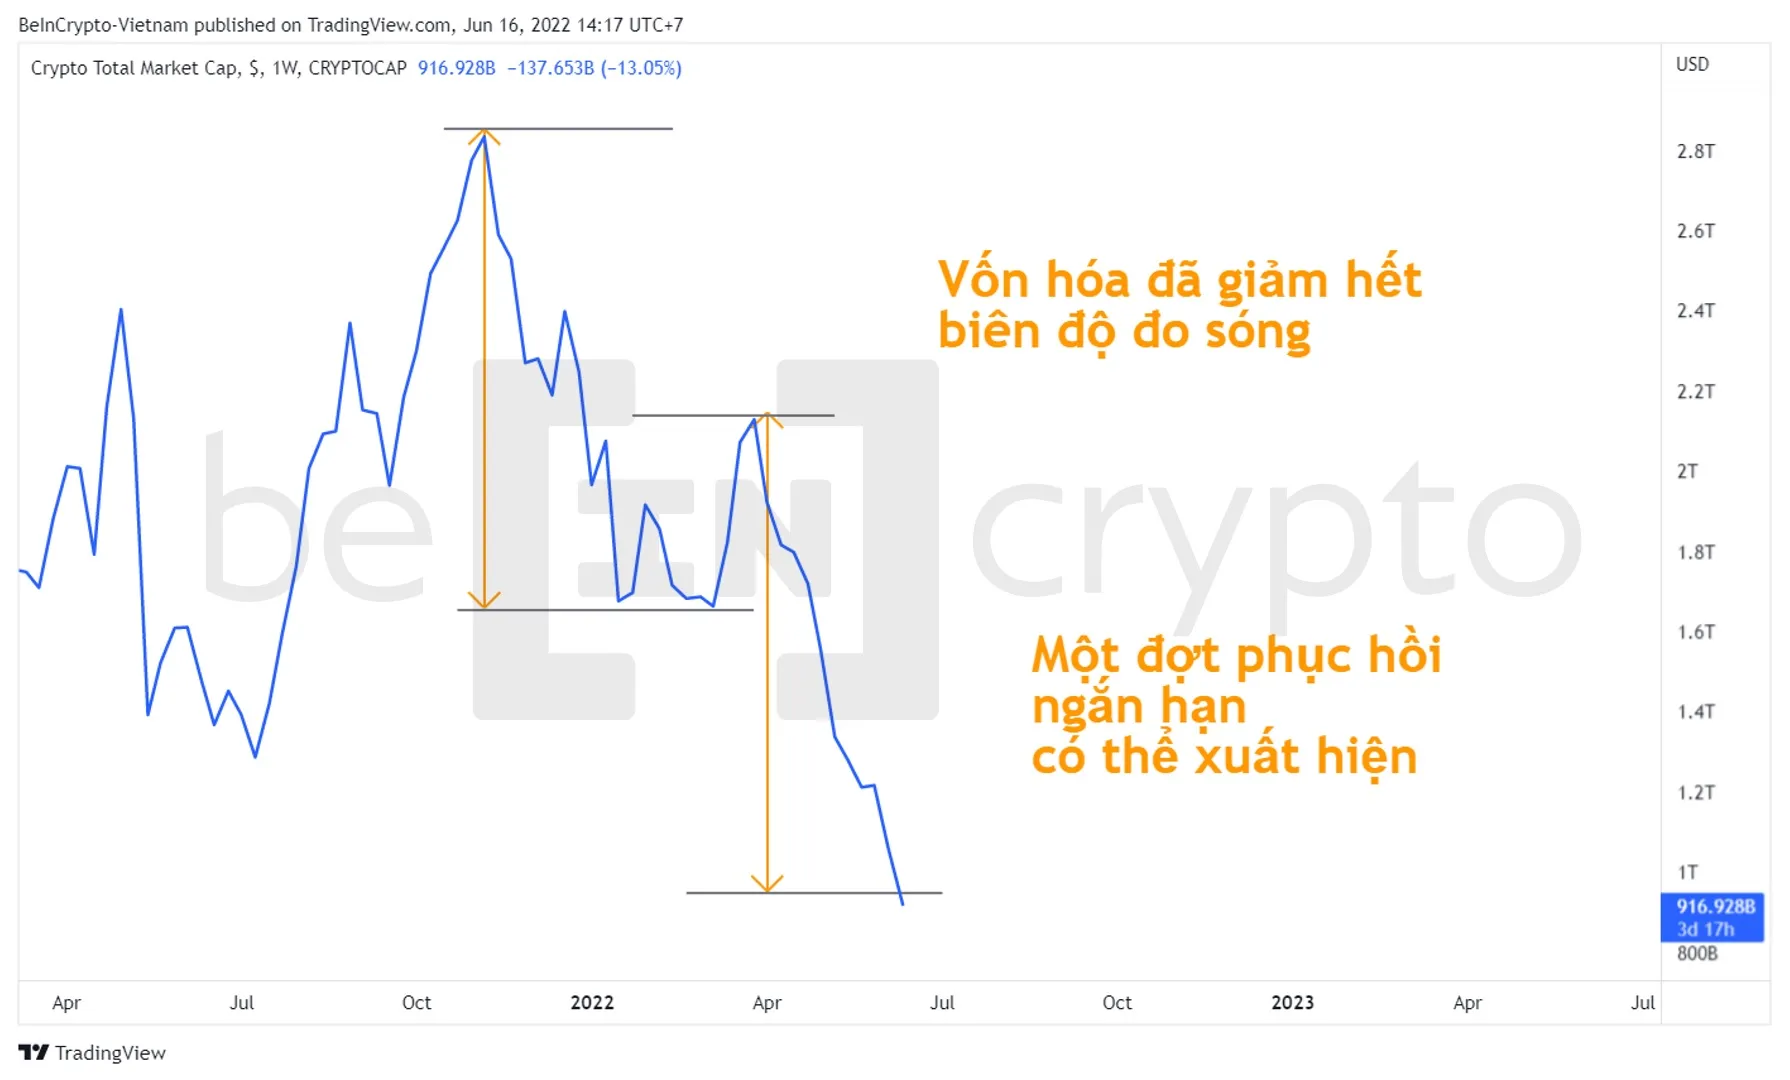 Đo sóng trên biểu đồ vốn hóa thị trường Crypto. Nguồn: vn.beincrypto.com